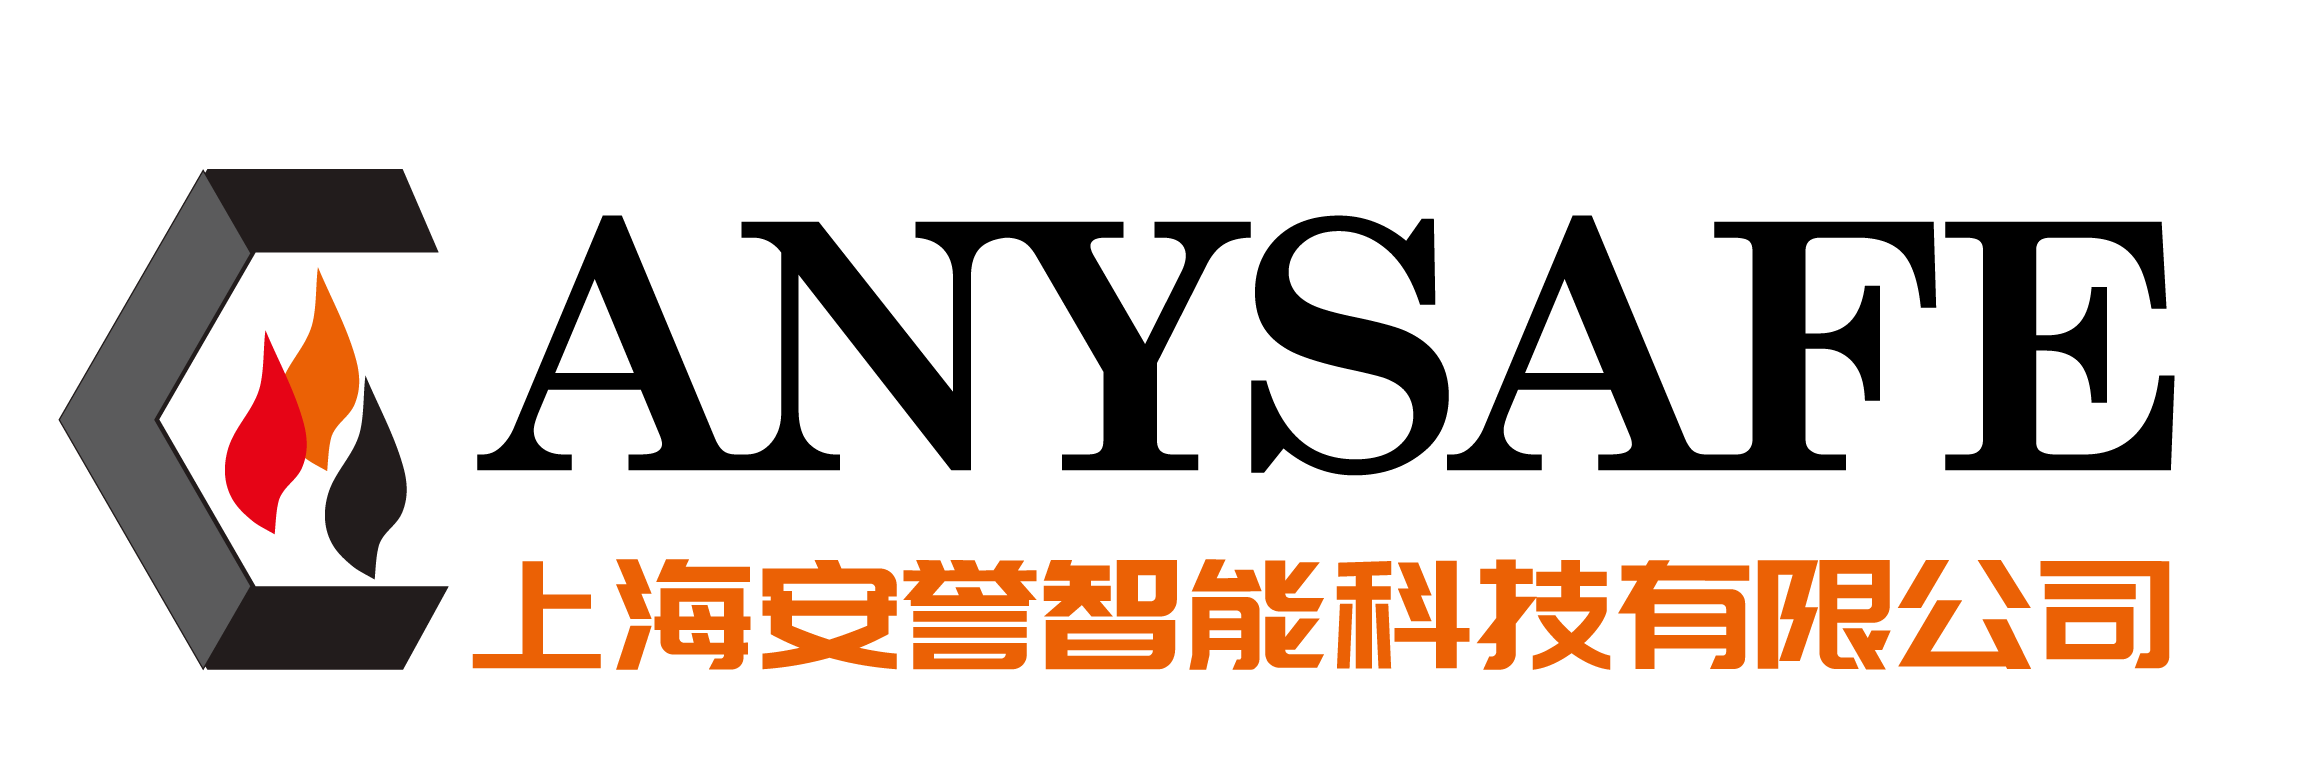 上海安誉智能科技有限公司